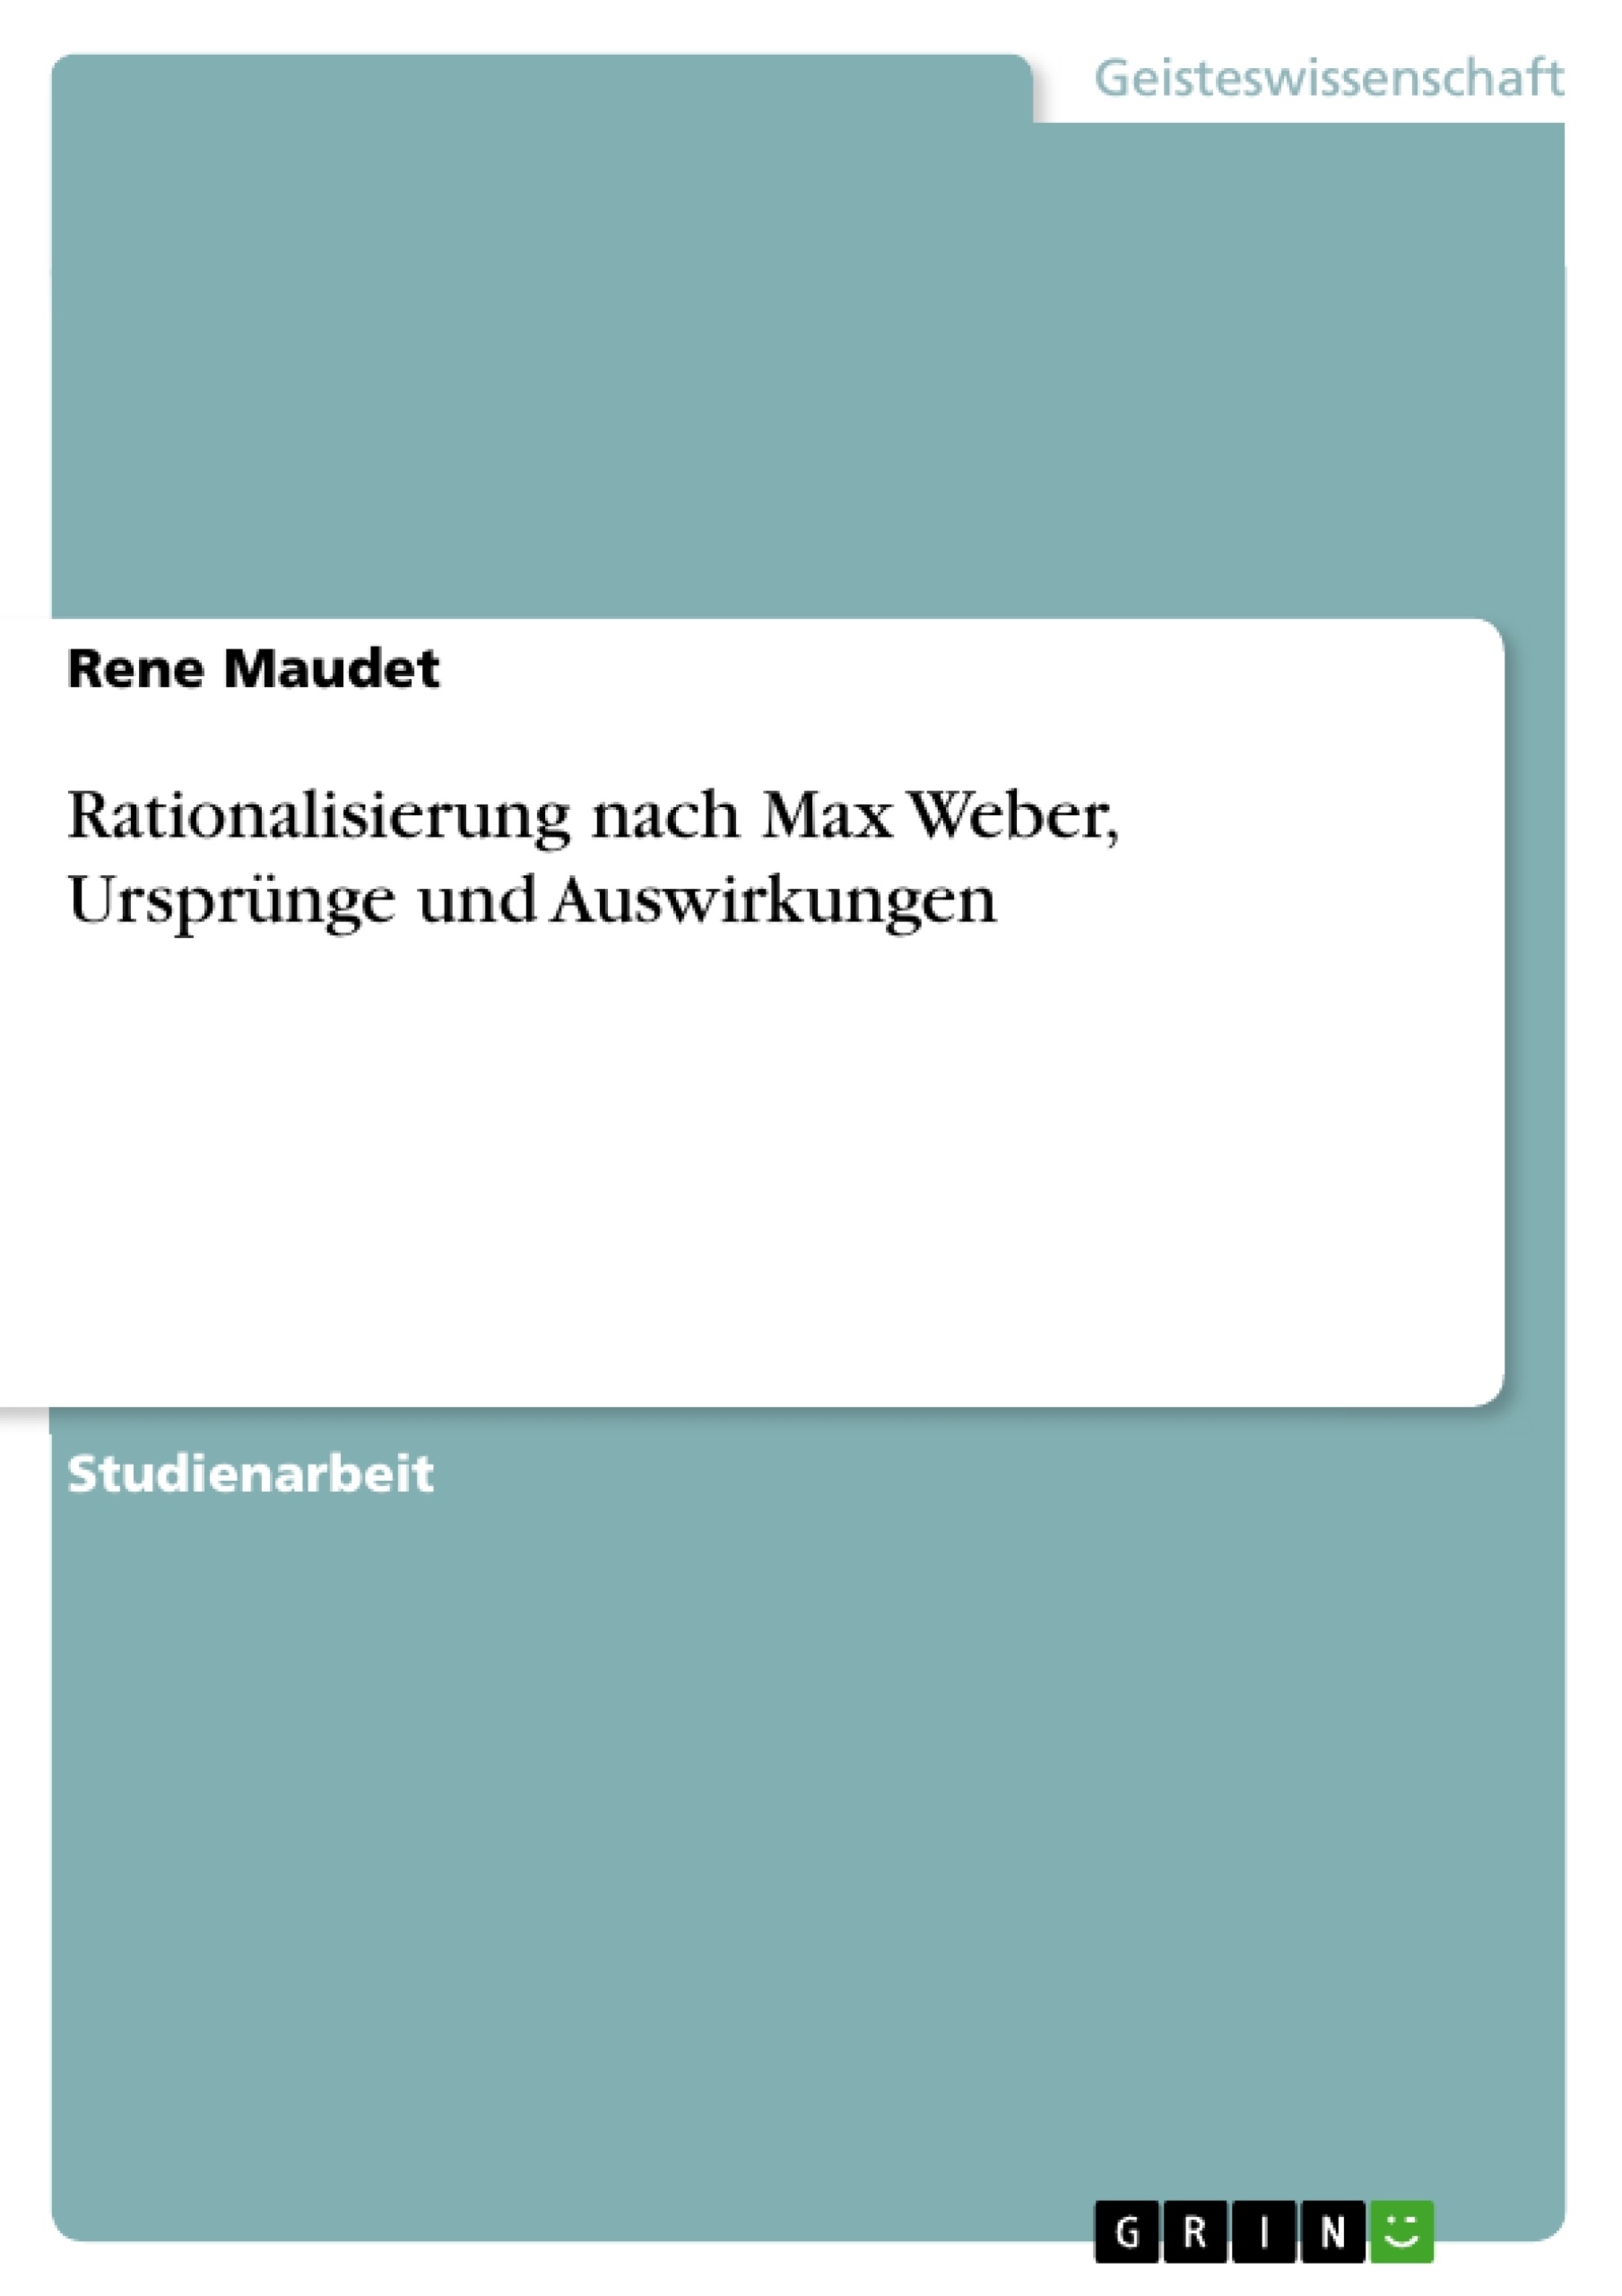 Título: Rationalisierung nach Max Weber, Ursprünge und Auswirkungen